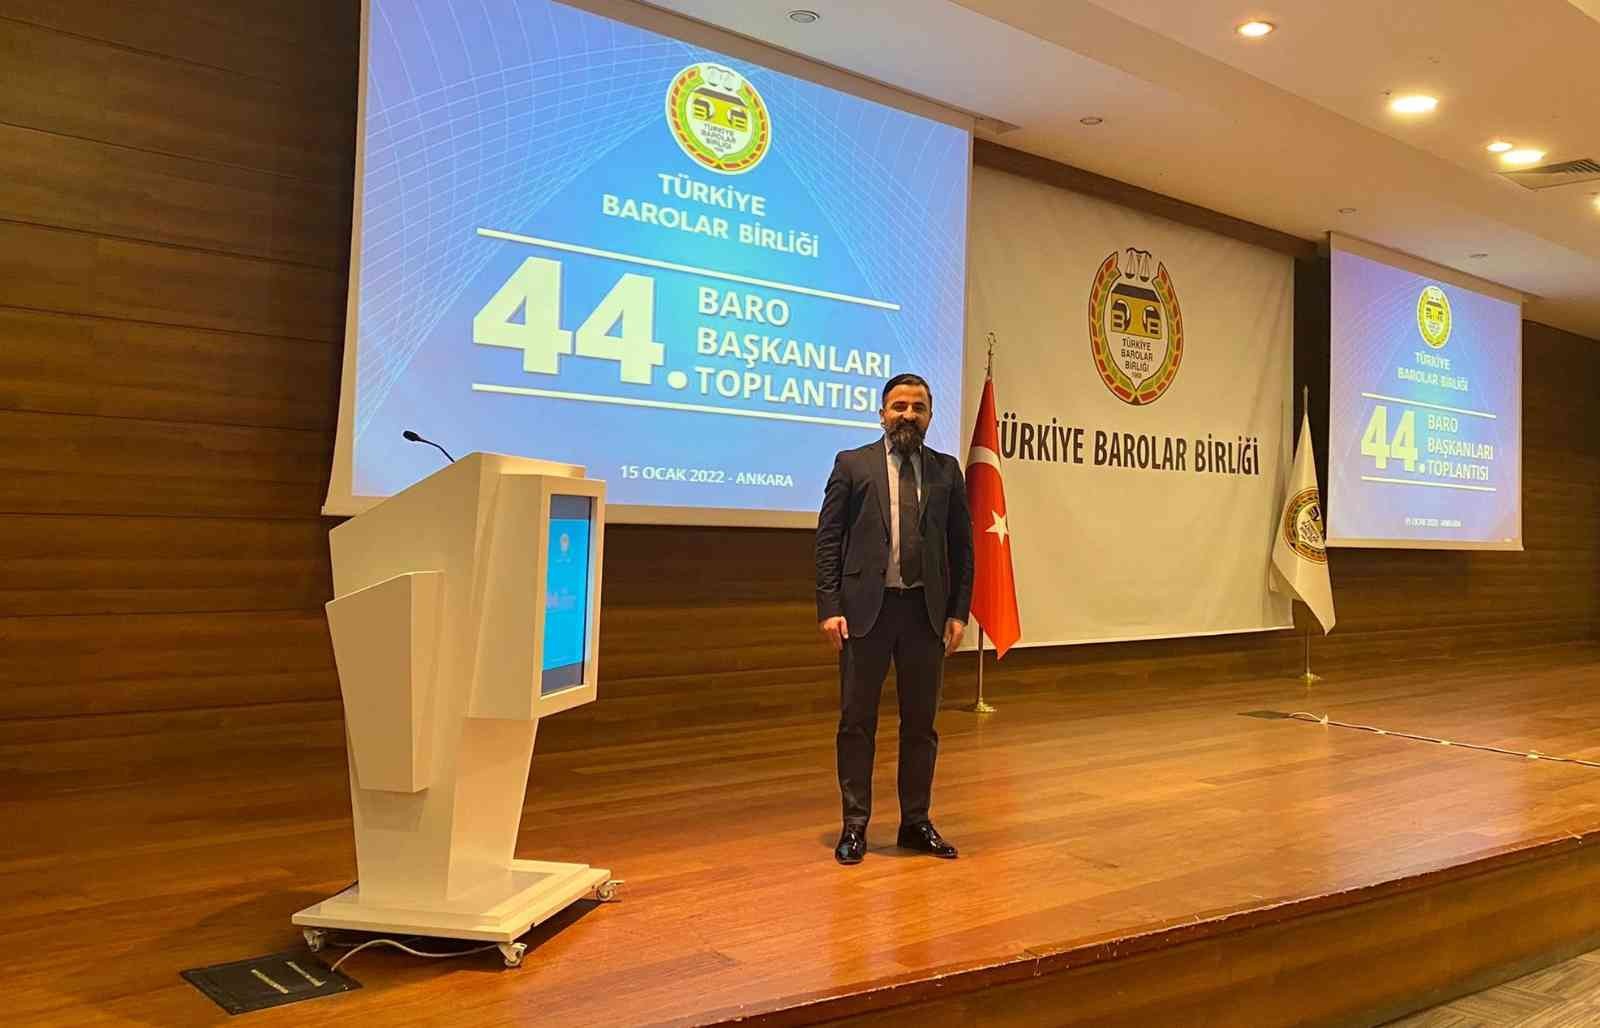 44. Baro Başkanları toplantısı TBB’de gerçekleştirildi #erzincan